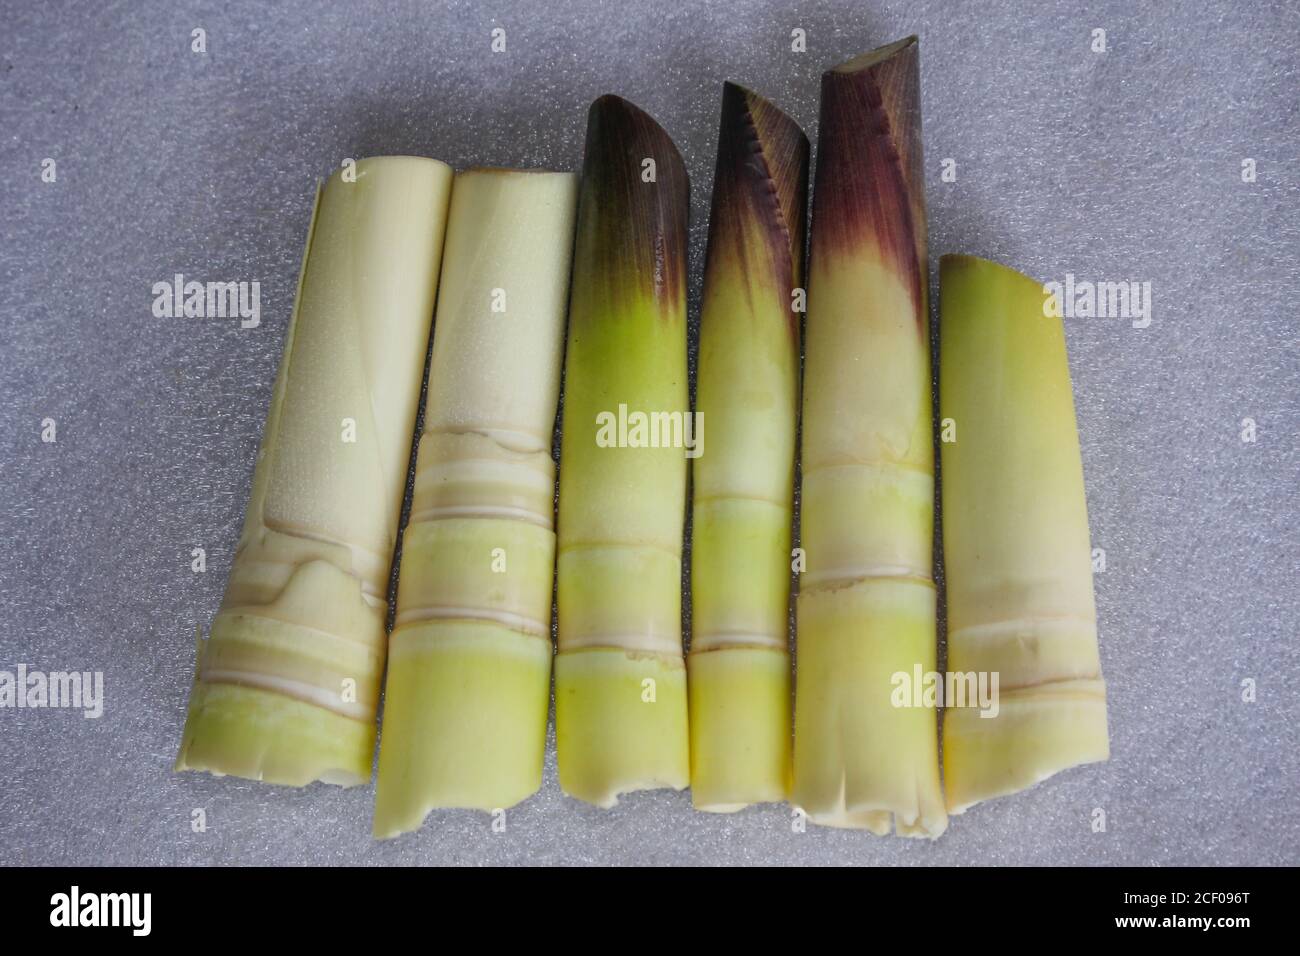 Bambus schießt geschälte köstliche Lebensmittel auf weißem Hintergrund gesetzt Stockfoto